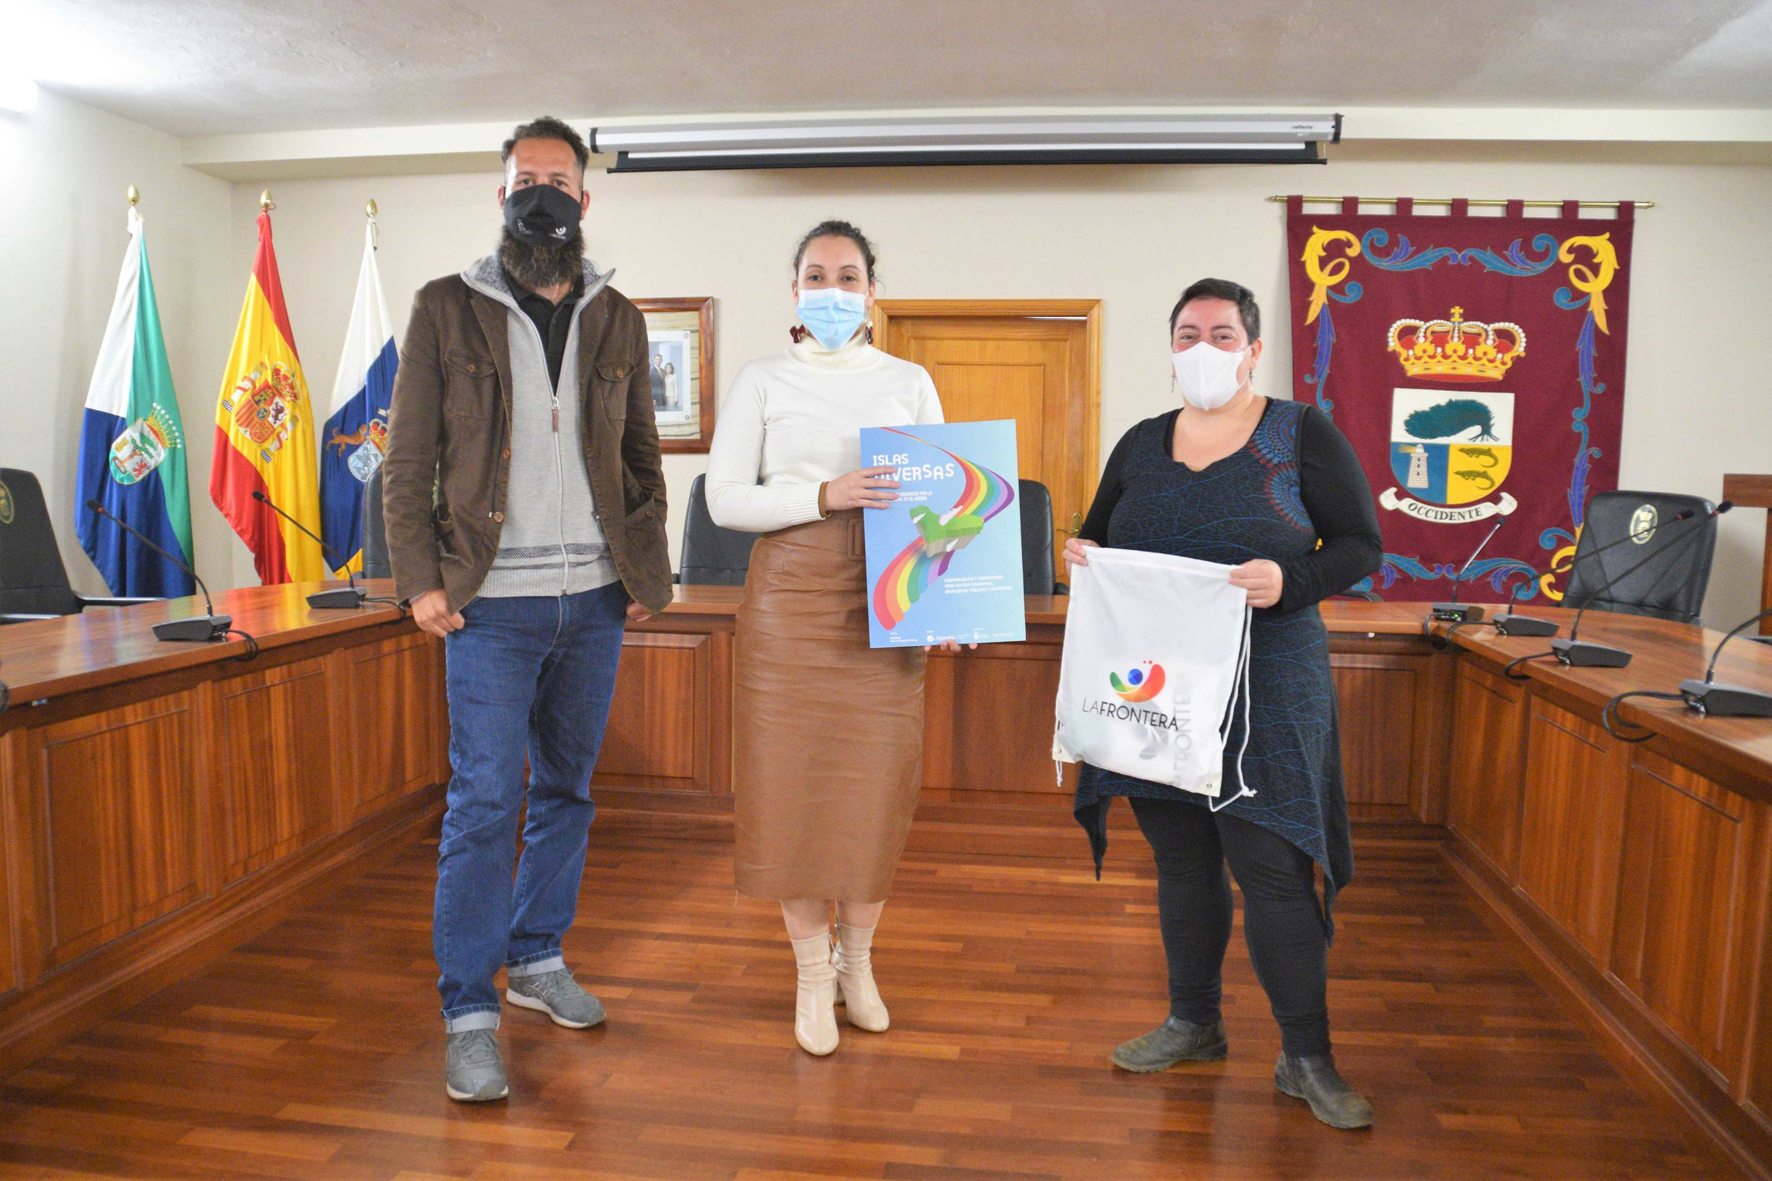 La asociación LGTBI “Algarabía” visita el Ayuntamiento de La Frontera